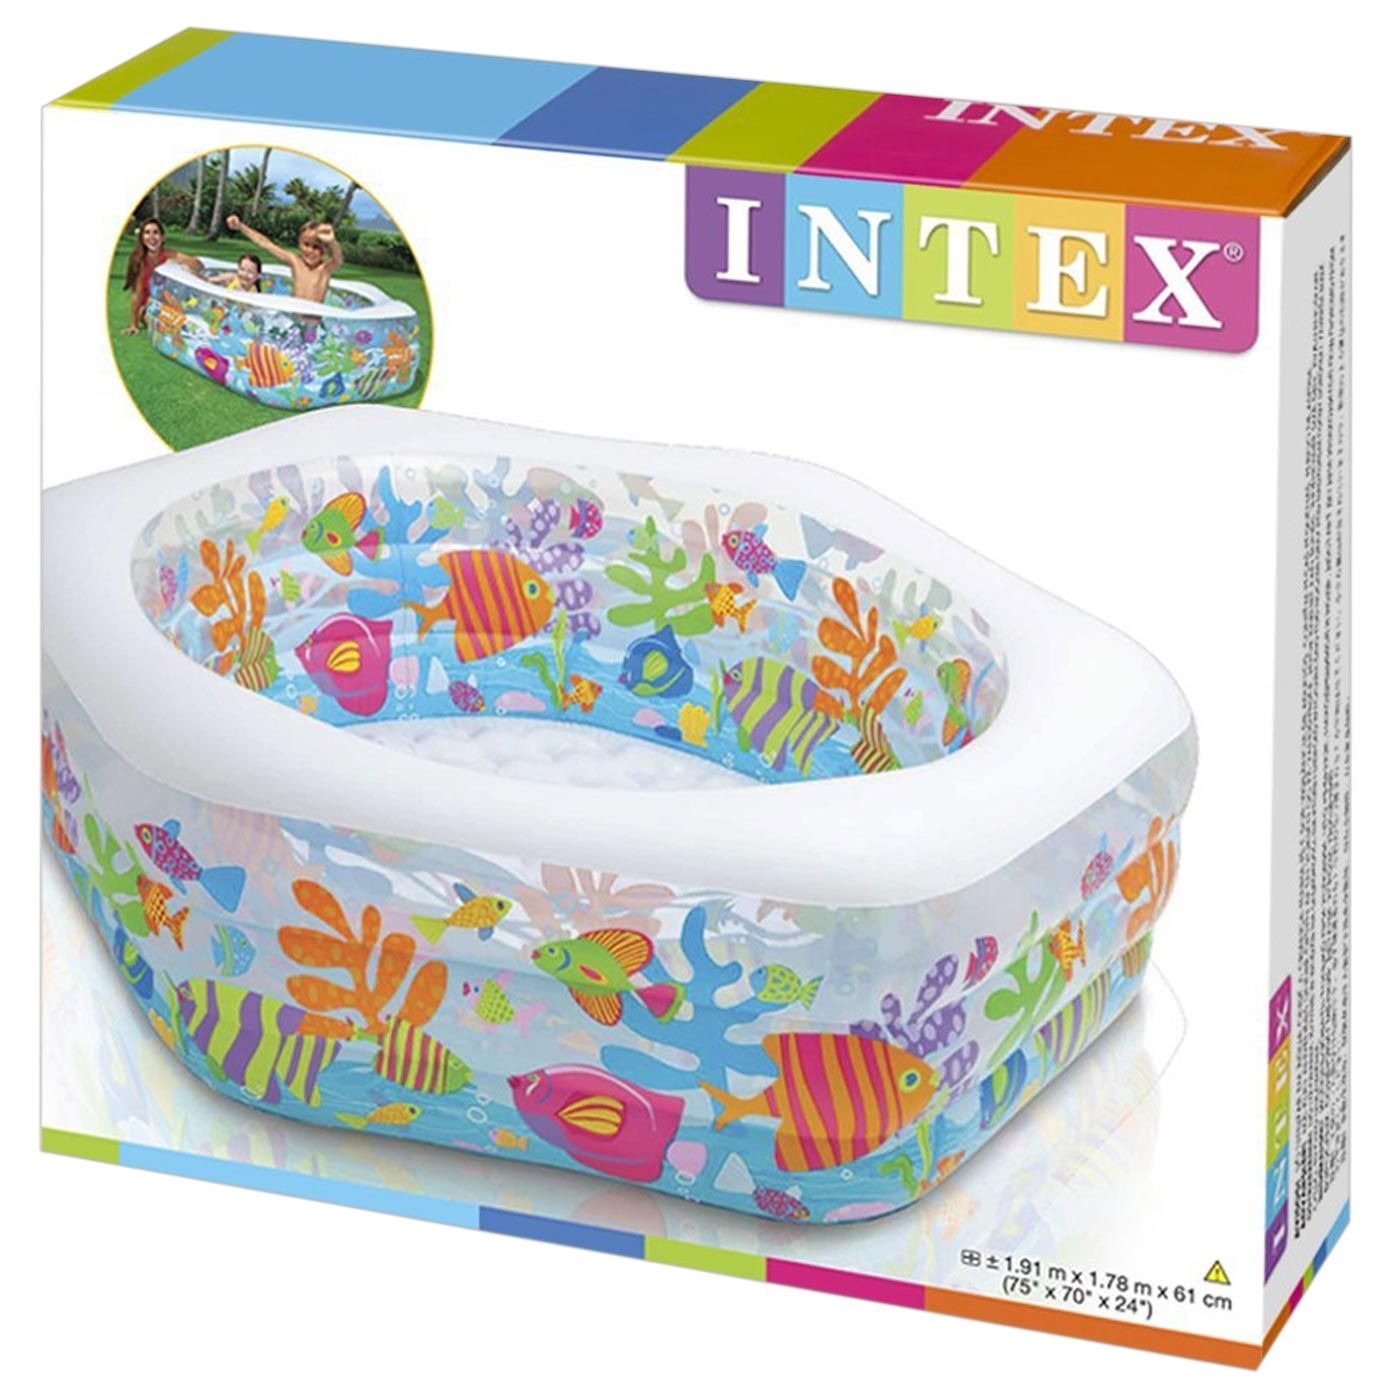 Free Intex Ocean Reef Pool(Children Day) - 3